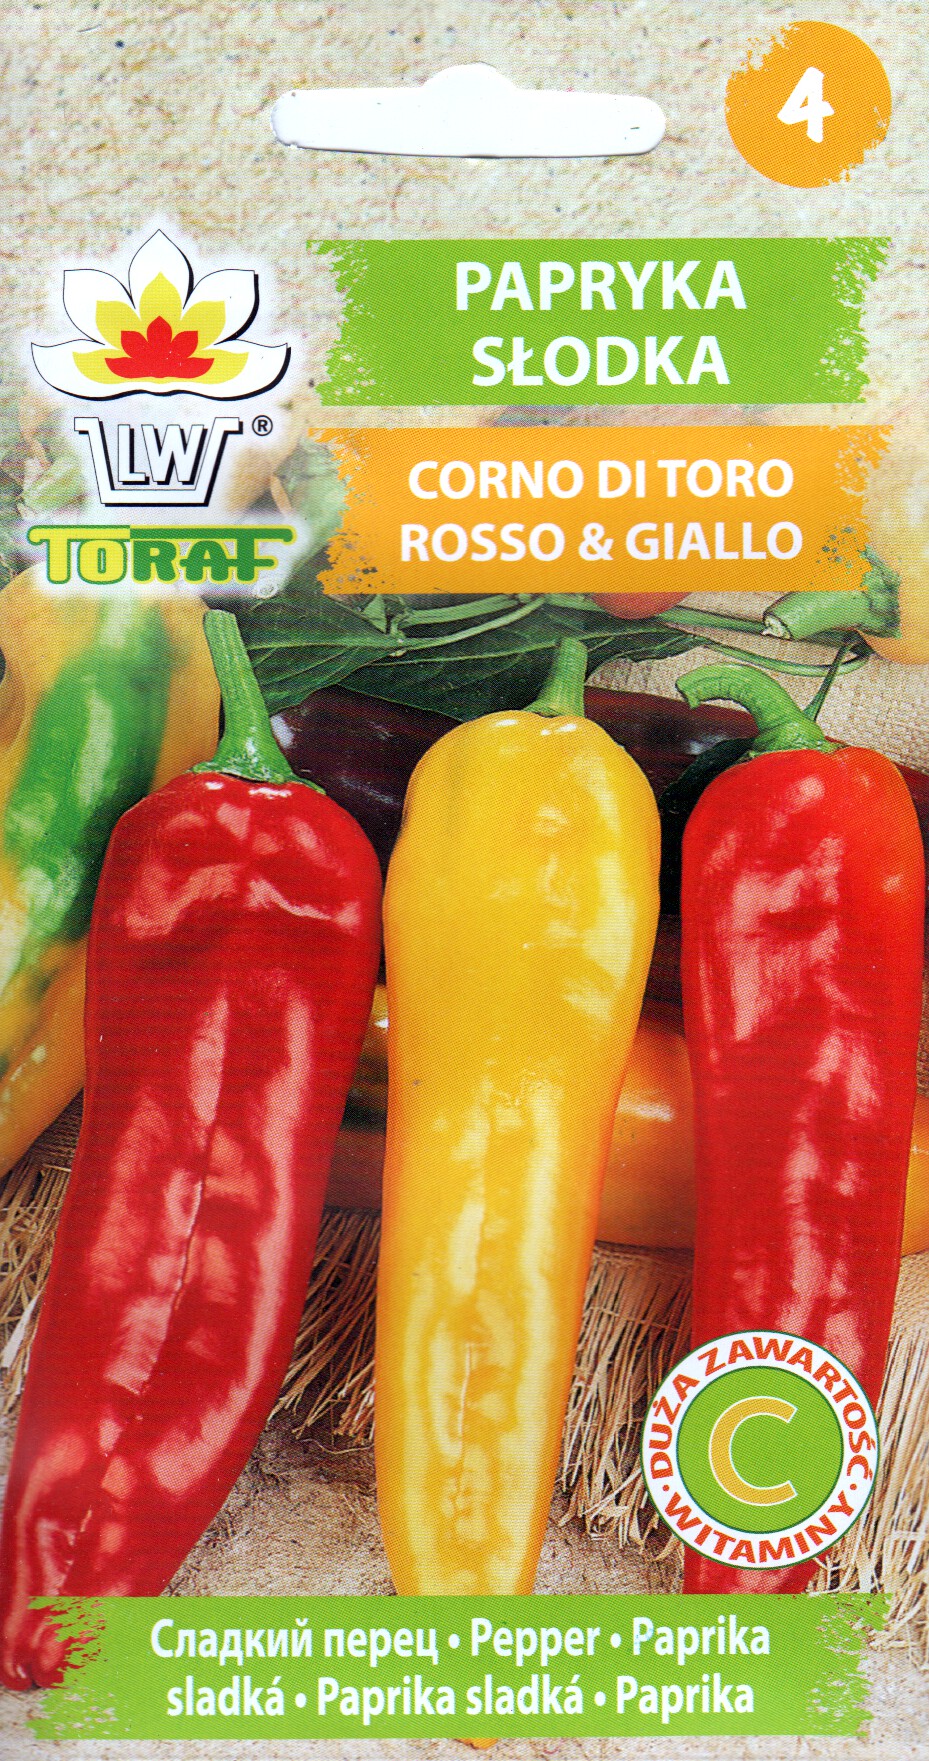 Paprika Corno Di Toro Rosso& Giallo